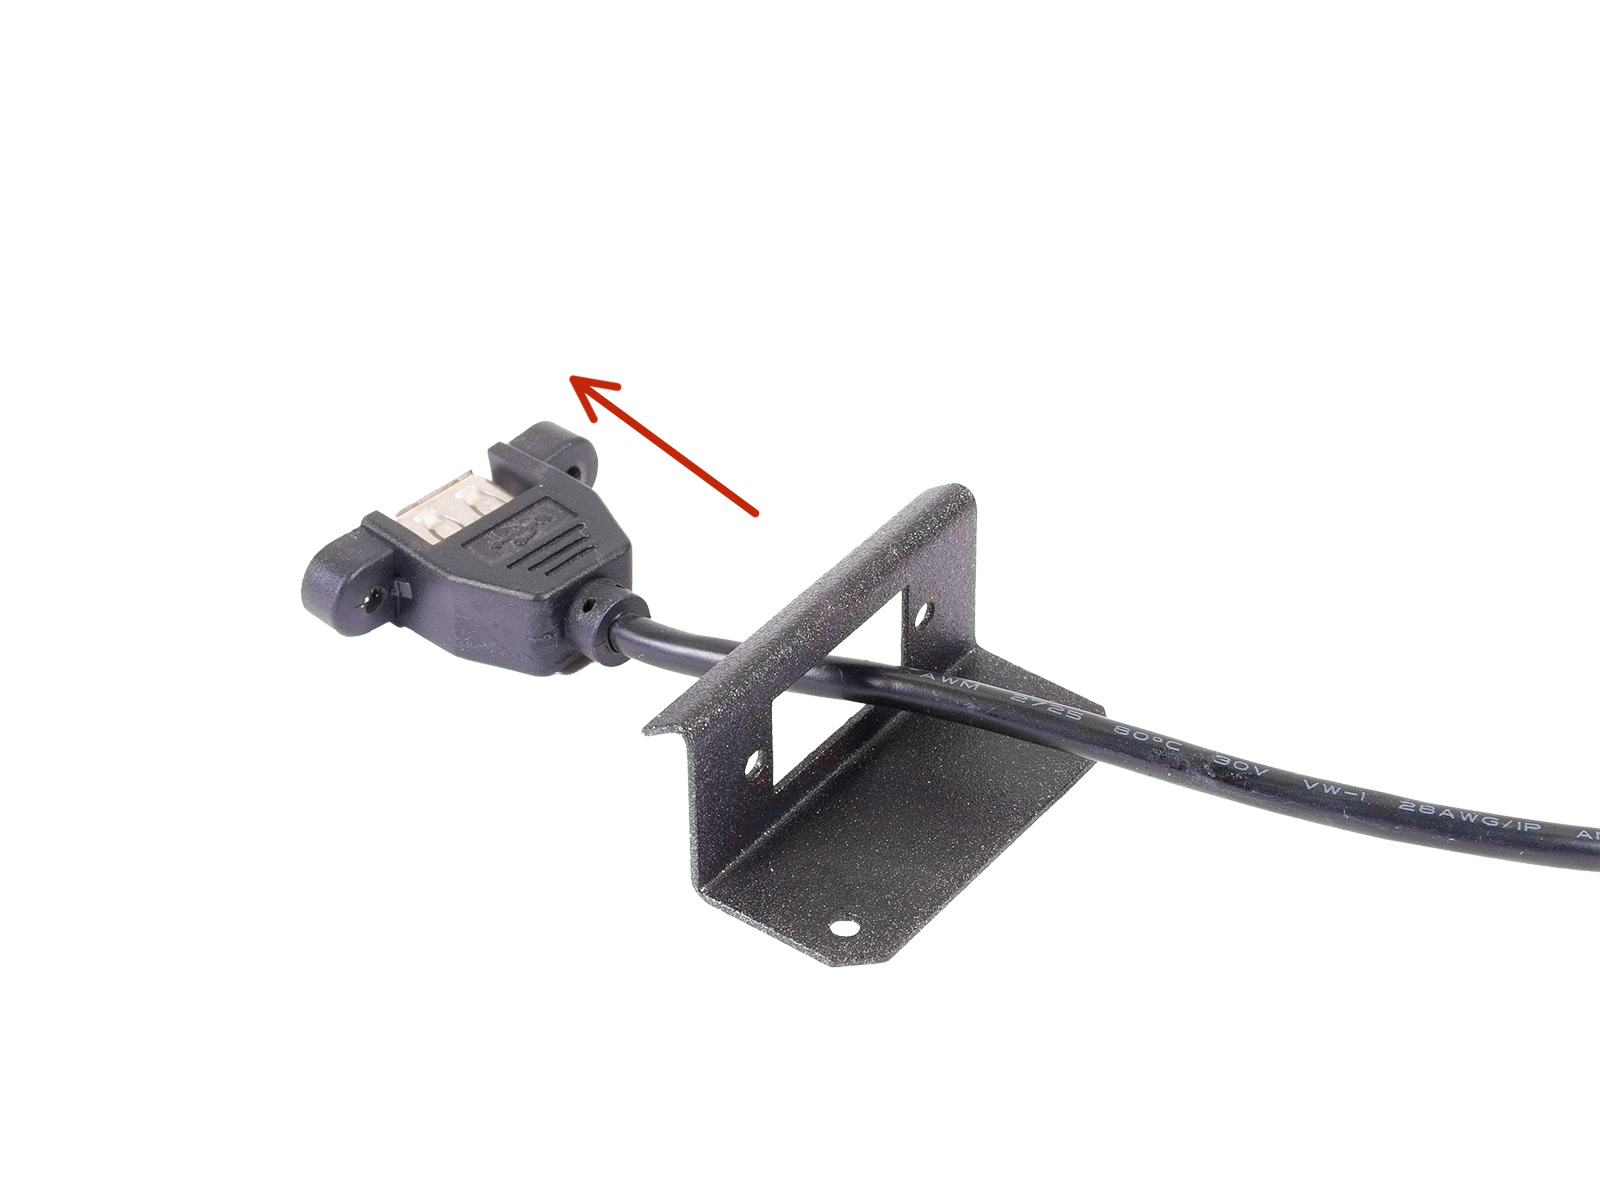 Desmontar el conector USB (Versión 1.0)